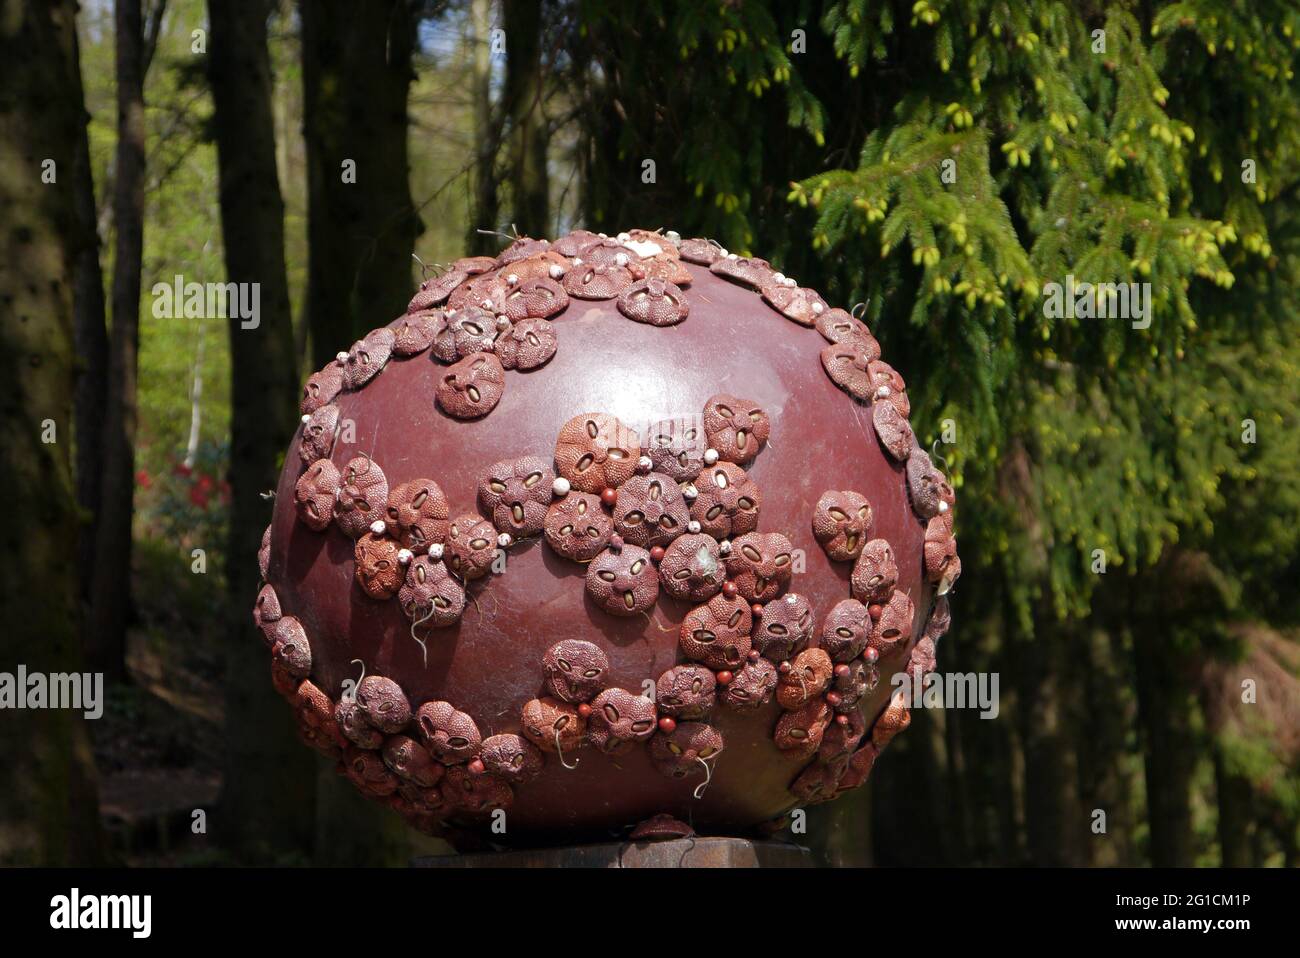 Bolas con Polen de Clay Gigante Grenes 'Rhodi Torana' en exhibición en el Jardín del Himalaya y Parque de Esculturas, Grewelthorpe, Ripon, North Yorkshire Foto de stock